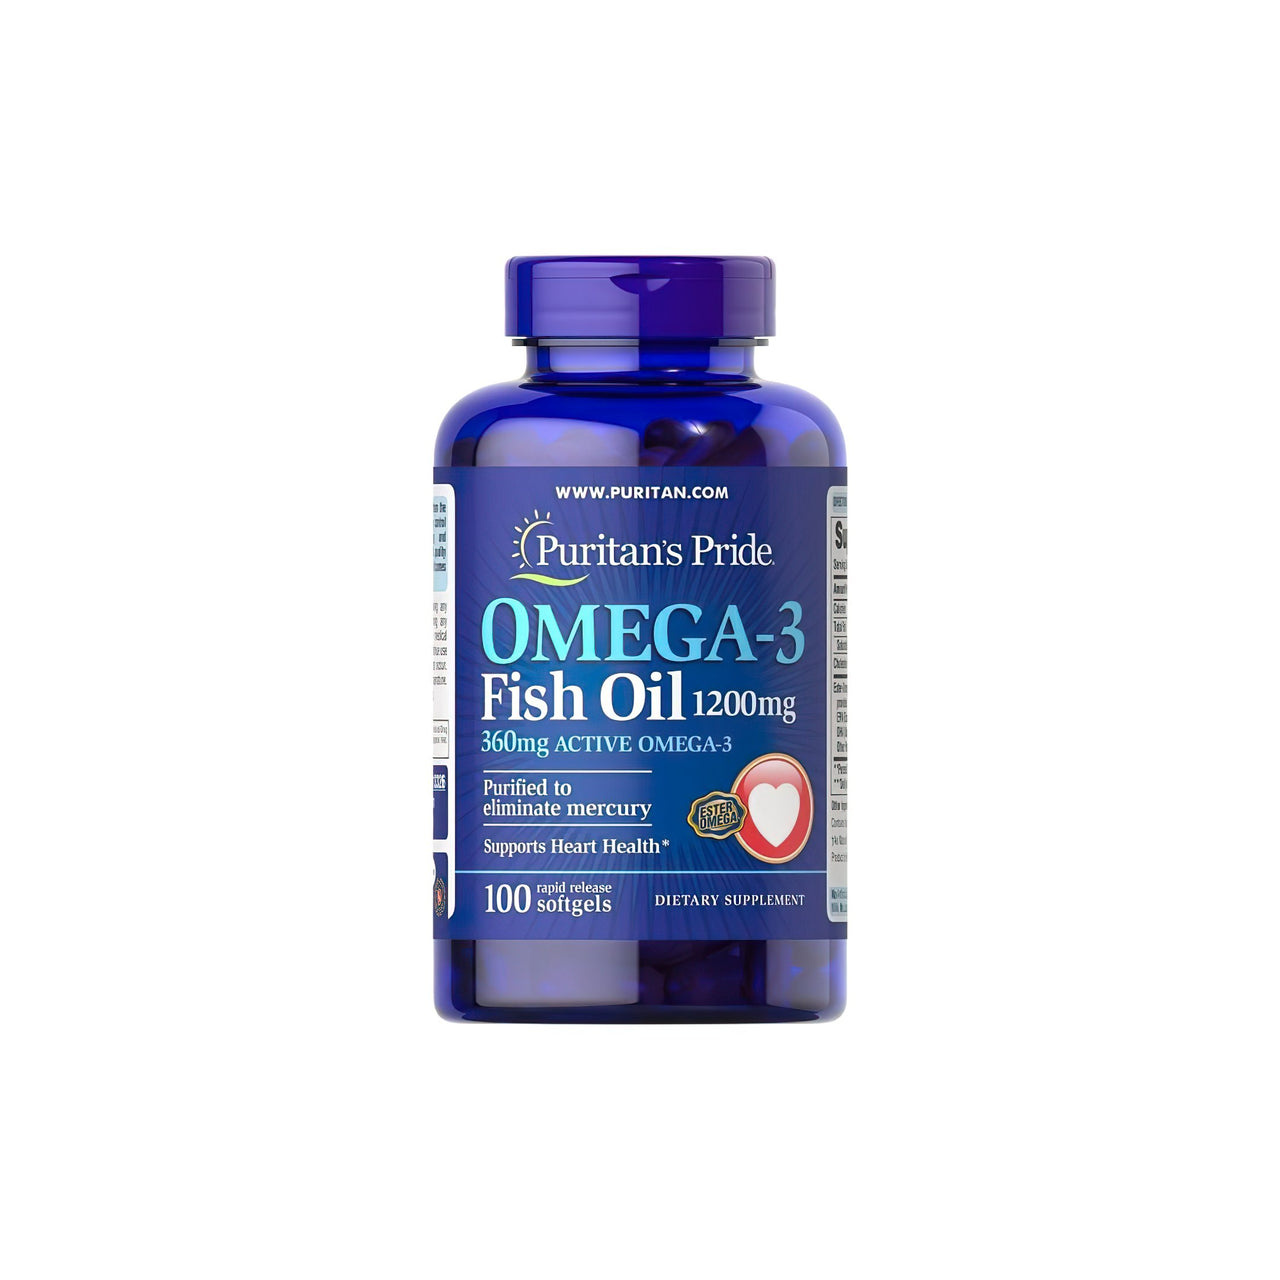 Un suplemento de 100 cápsulas blandas de Aceite de Pescado Omega-3 de 1200 mg (360 mg de Omega-3 Activo) de Puritan's Pride para la salud cardiovascular y la función cognitiva.